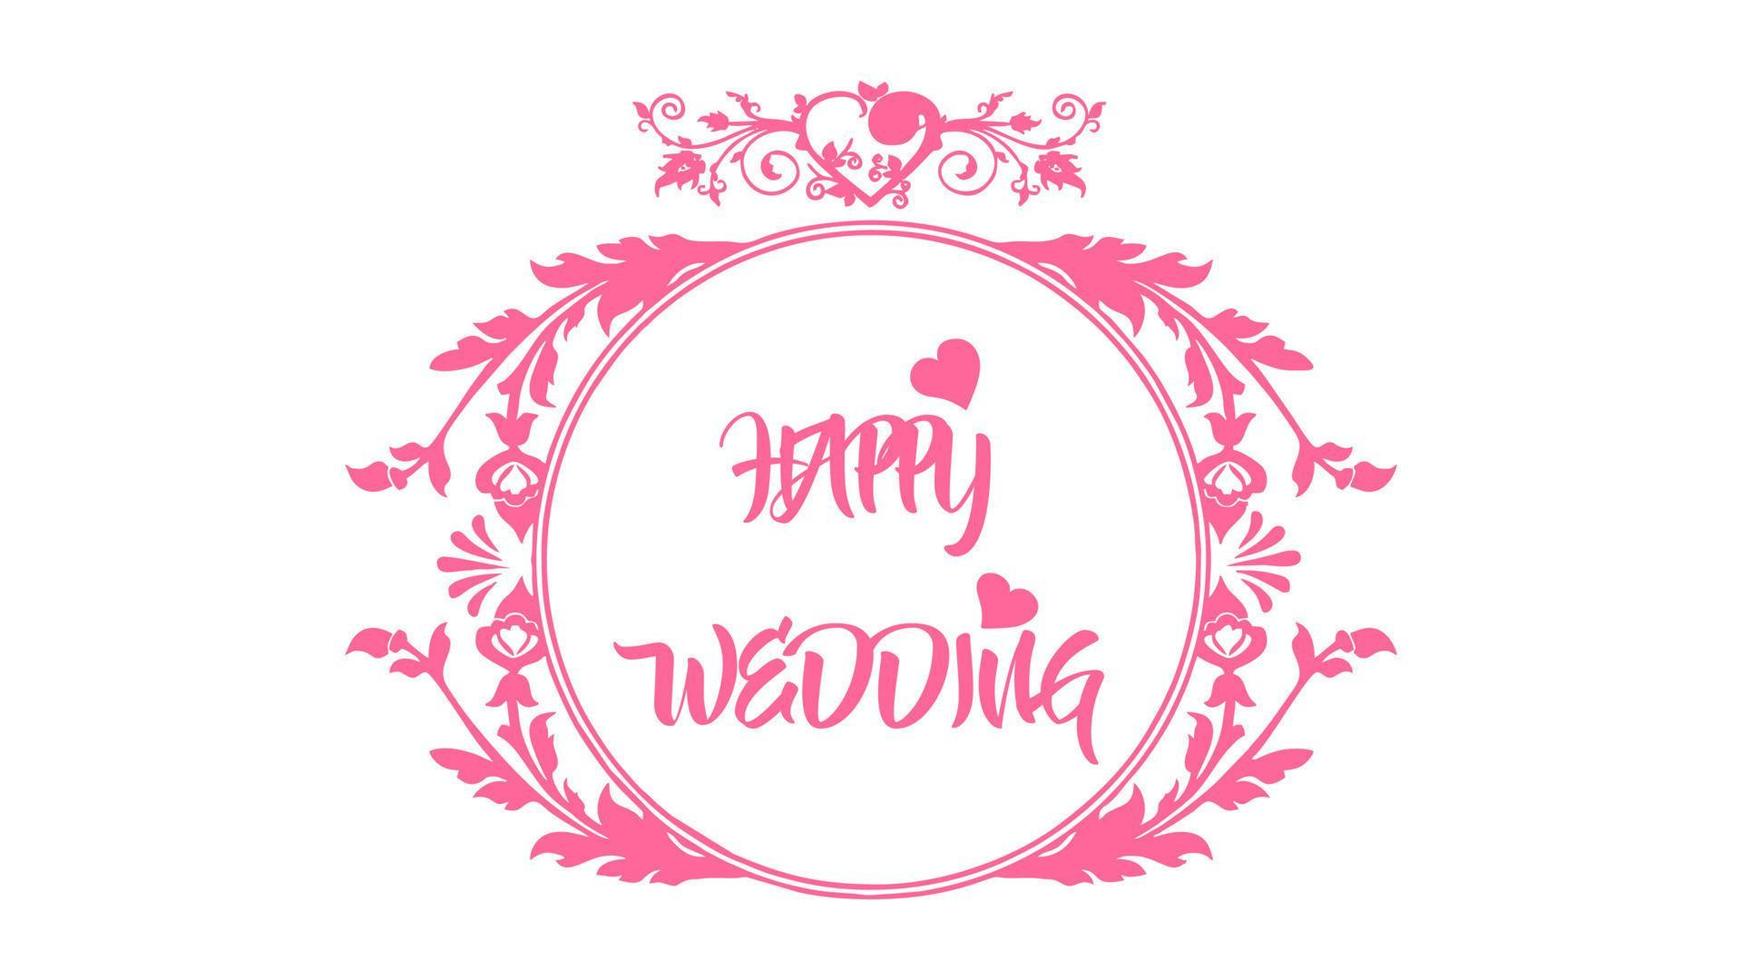 contento nozze rosa testo tipografia con floreale ornamento vettore